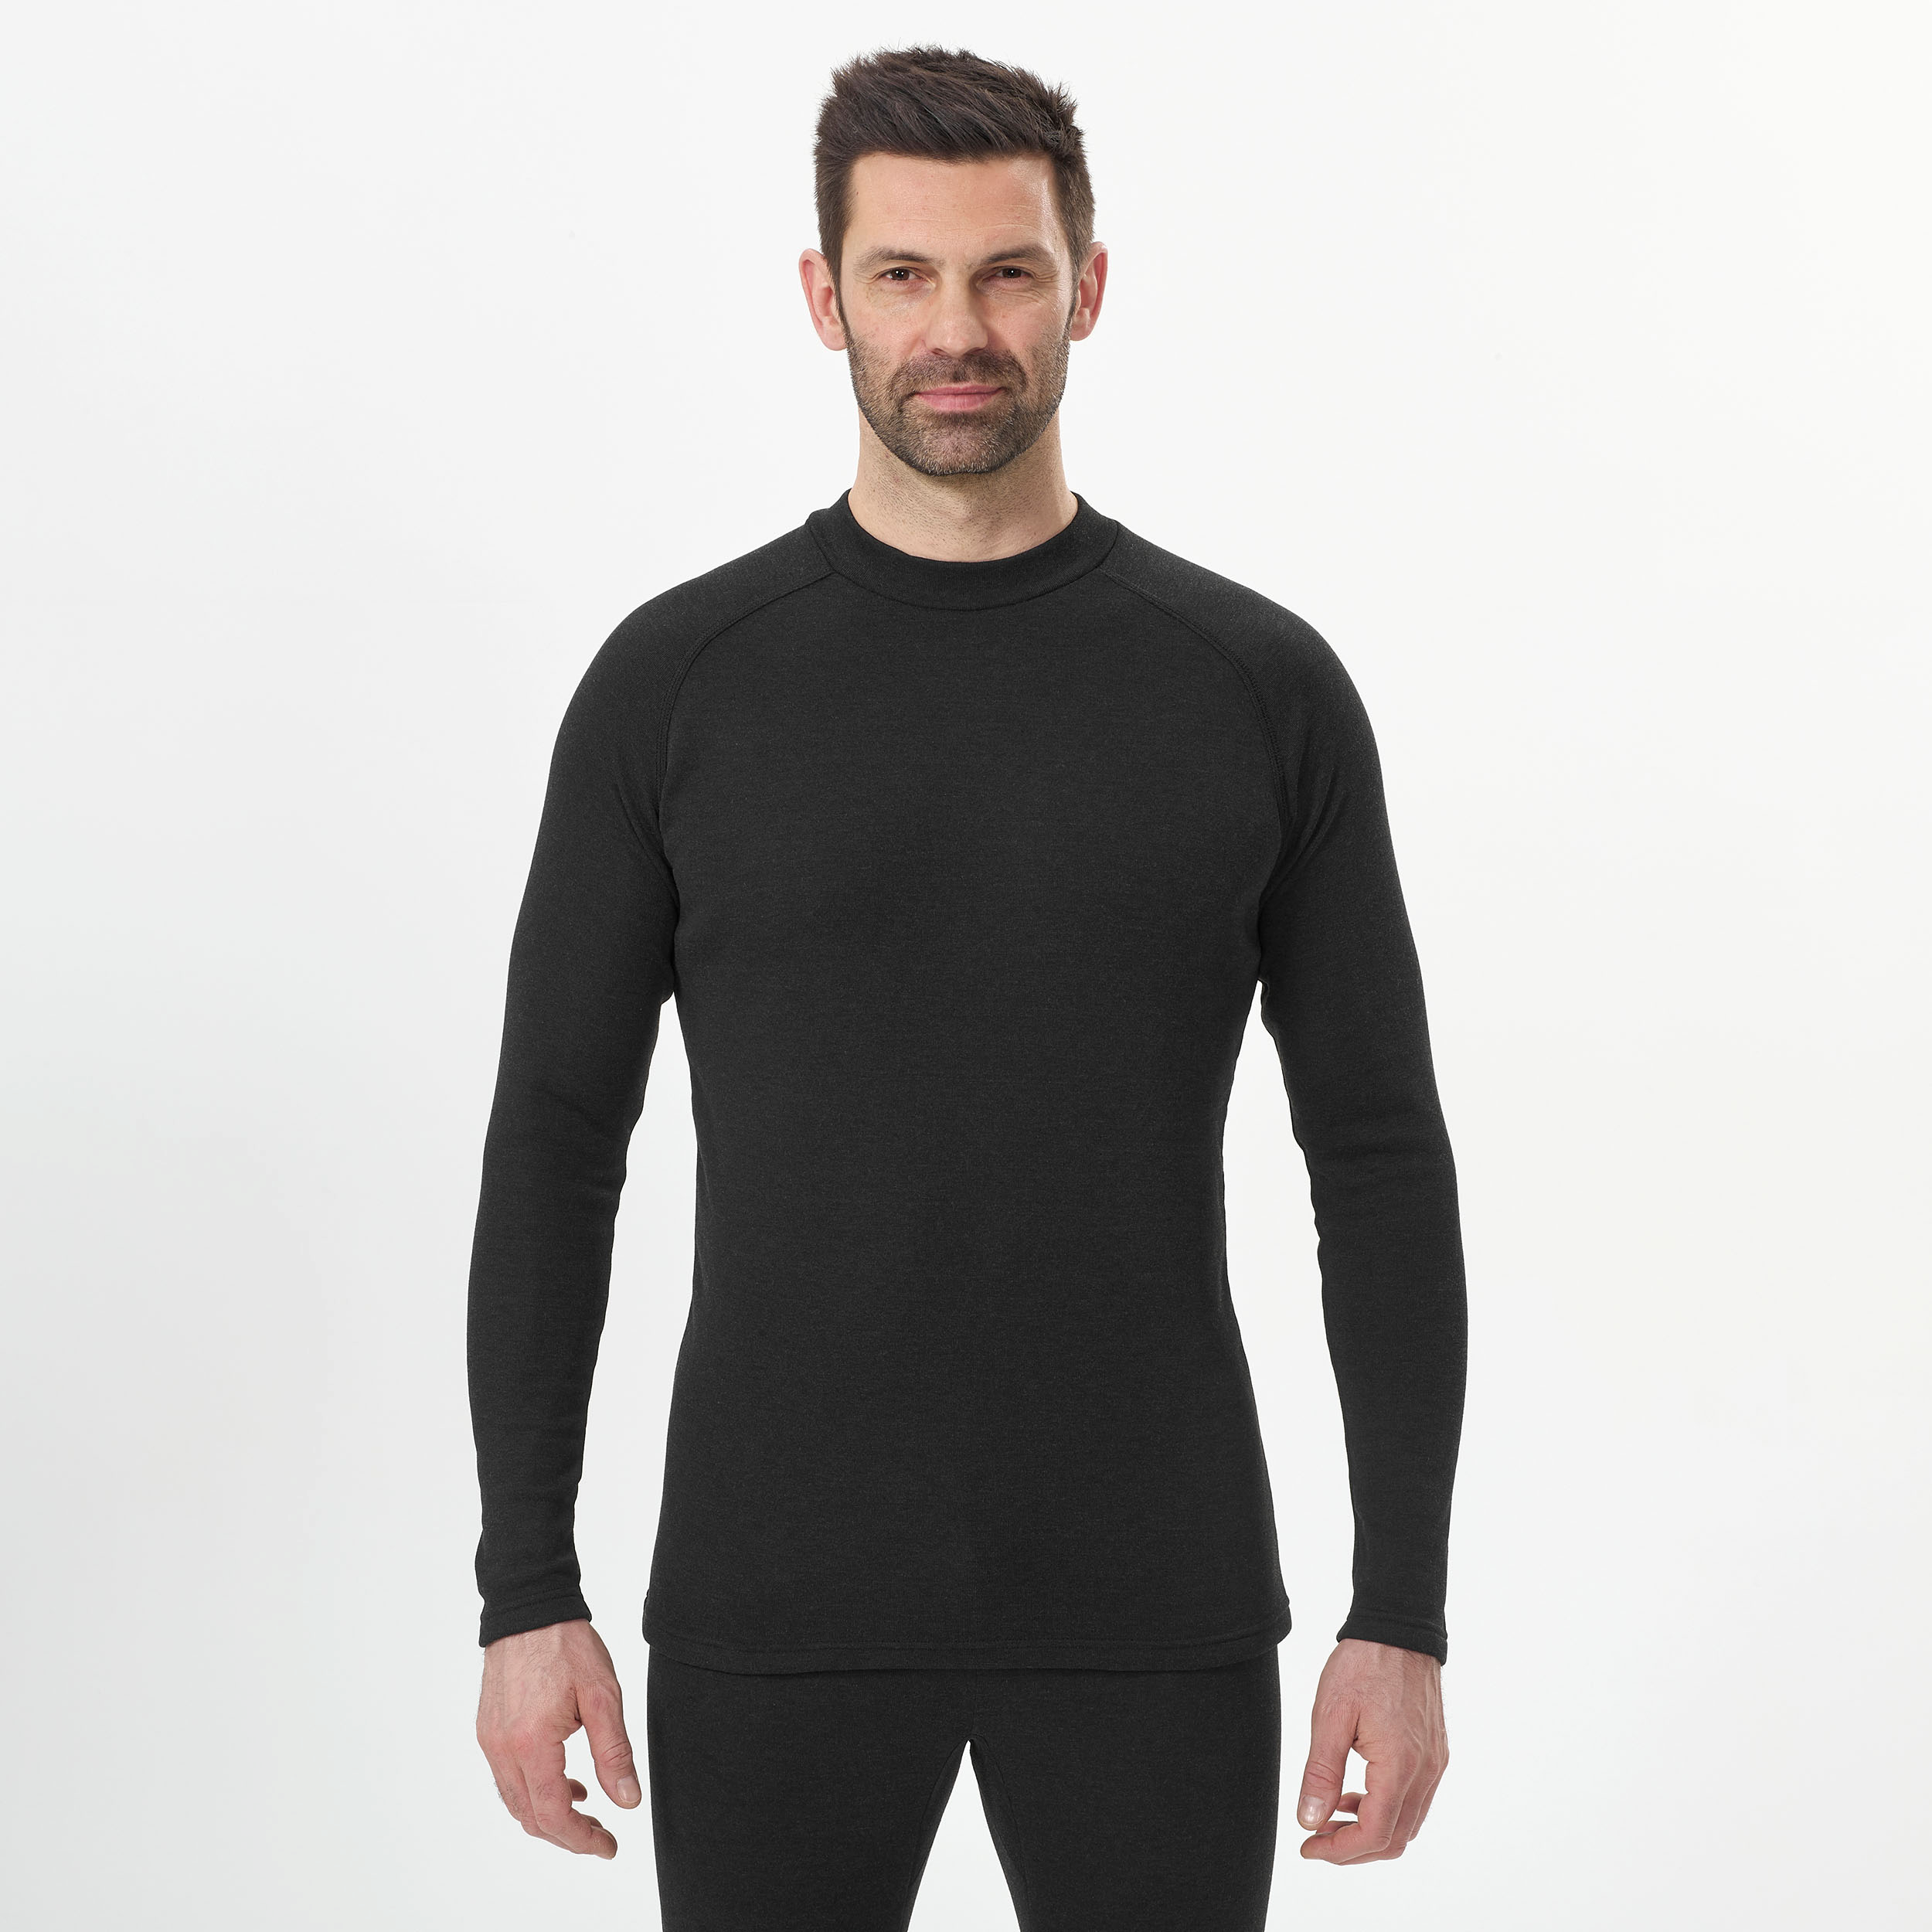 Sous-vêtement de ski homme - BL 100 haut - Noir pour les clubs et